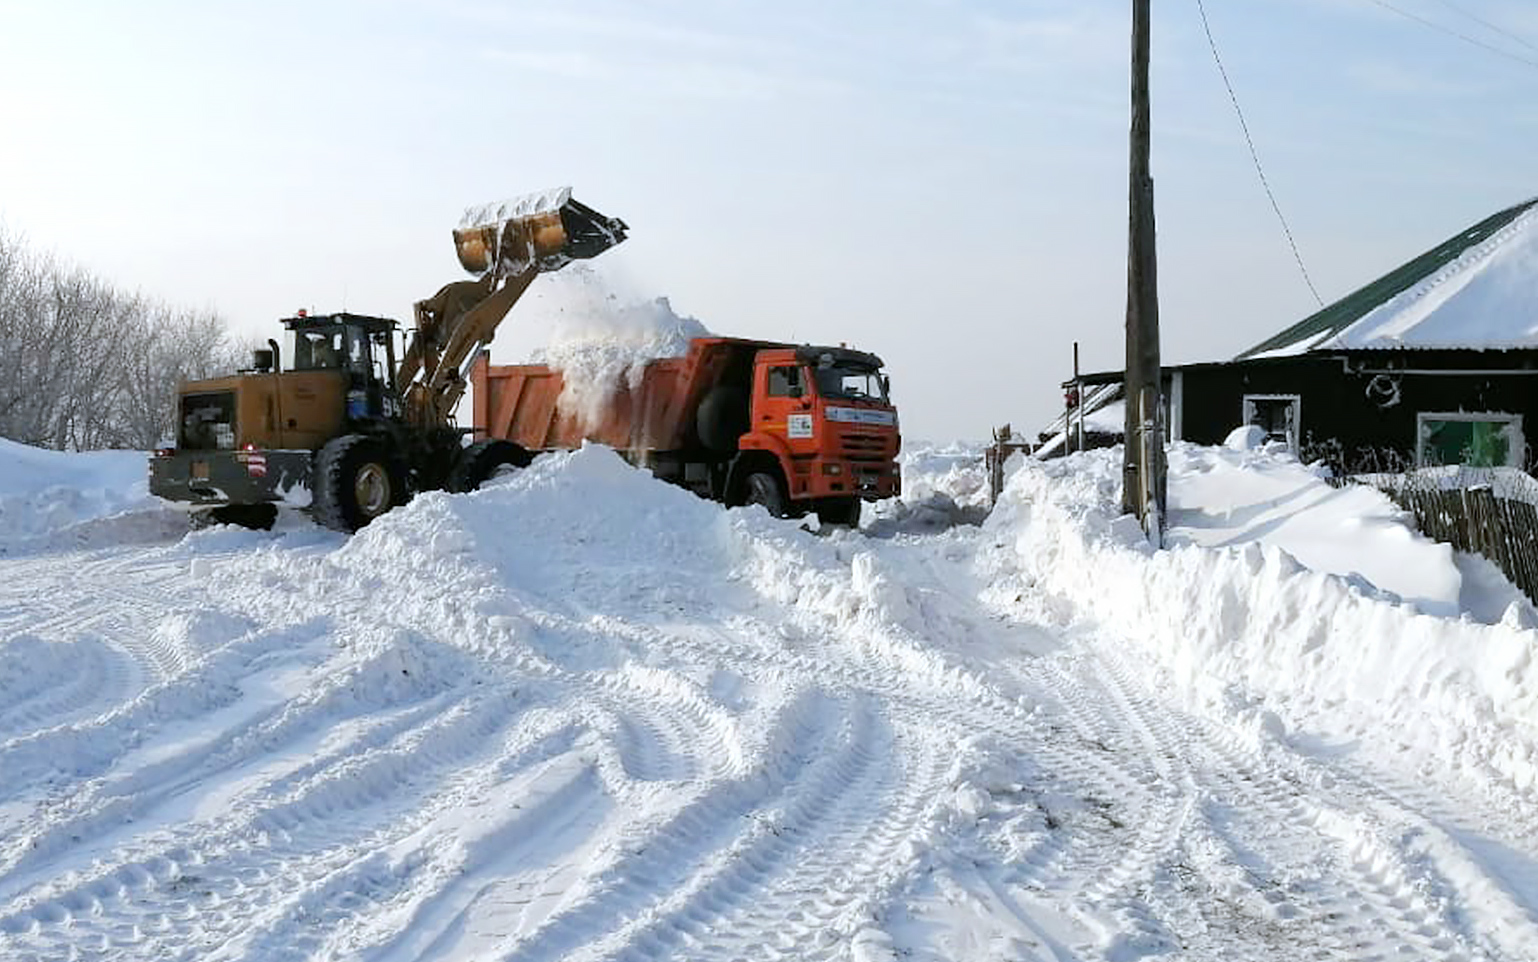 Предприятия Стройсервиса спасают Белово и Беловский район от снежного коллапса. Стройсервис